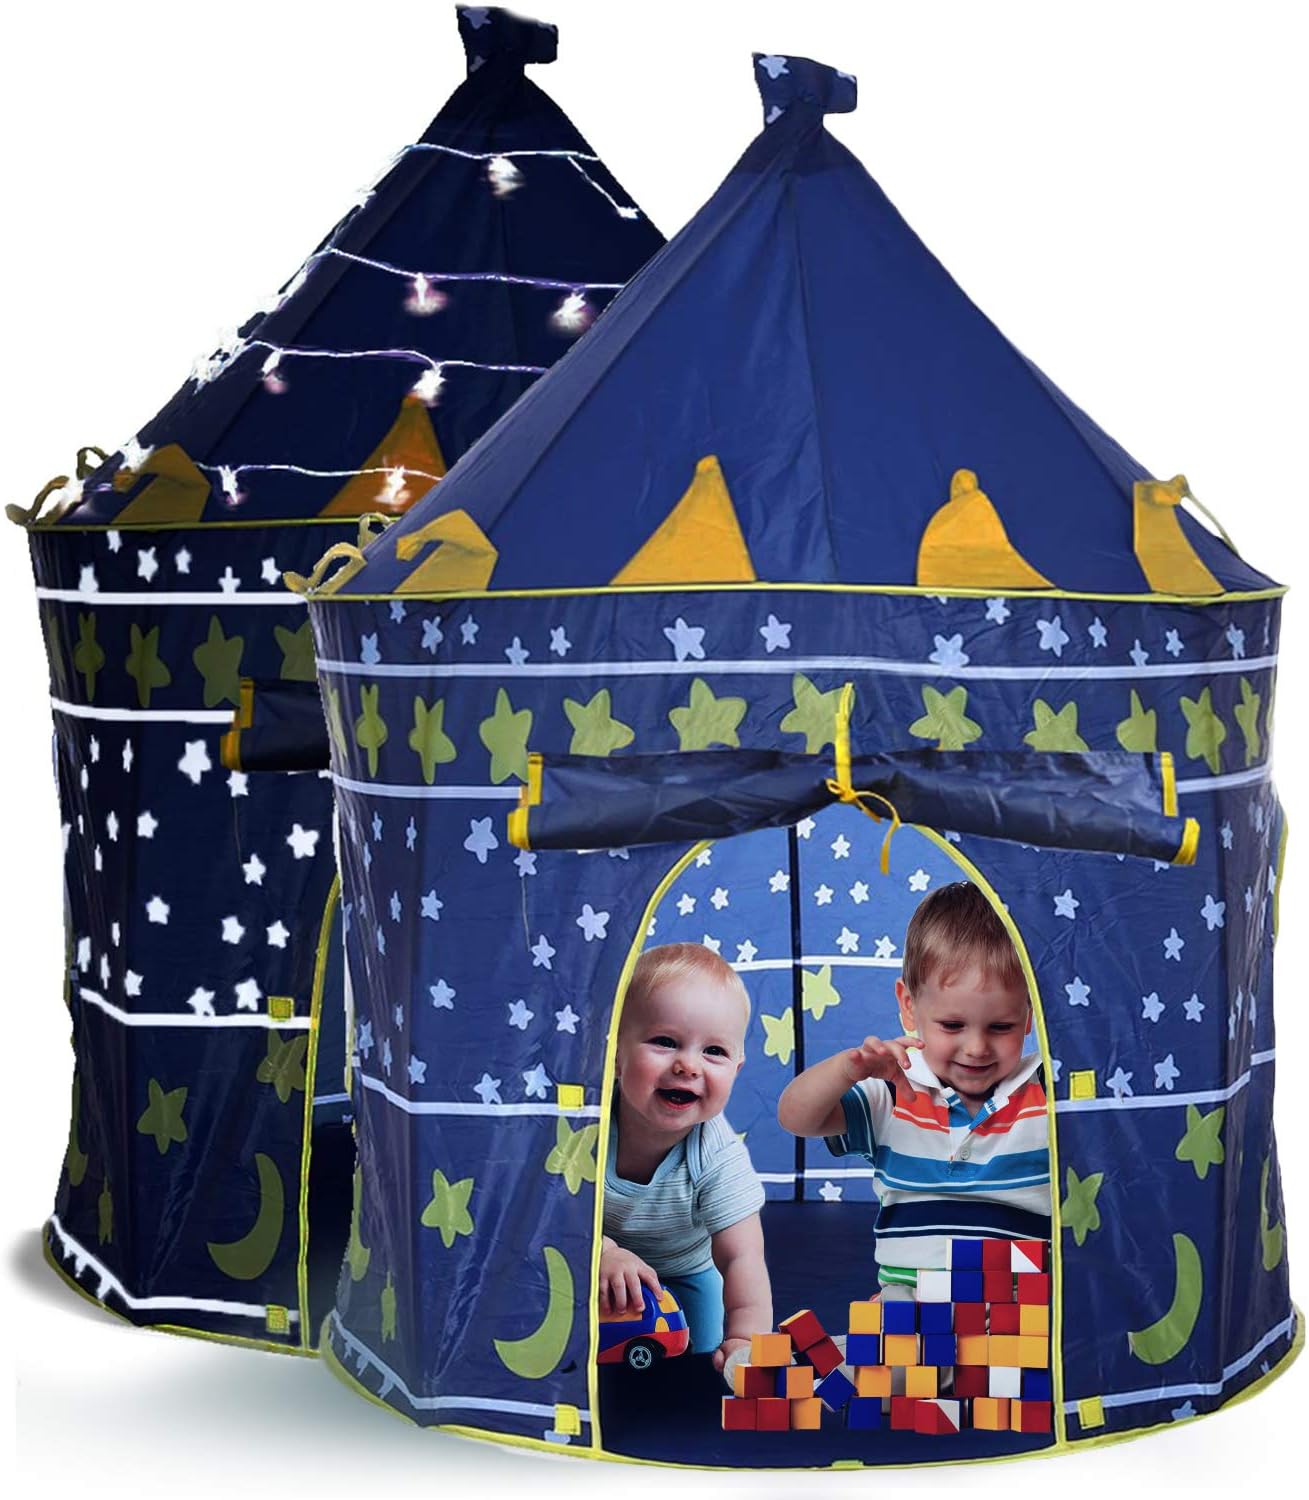 speciální dětský stan – palác pro děti